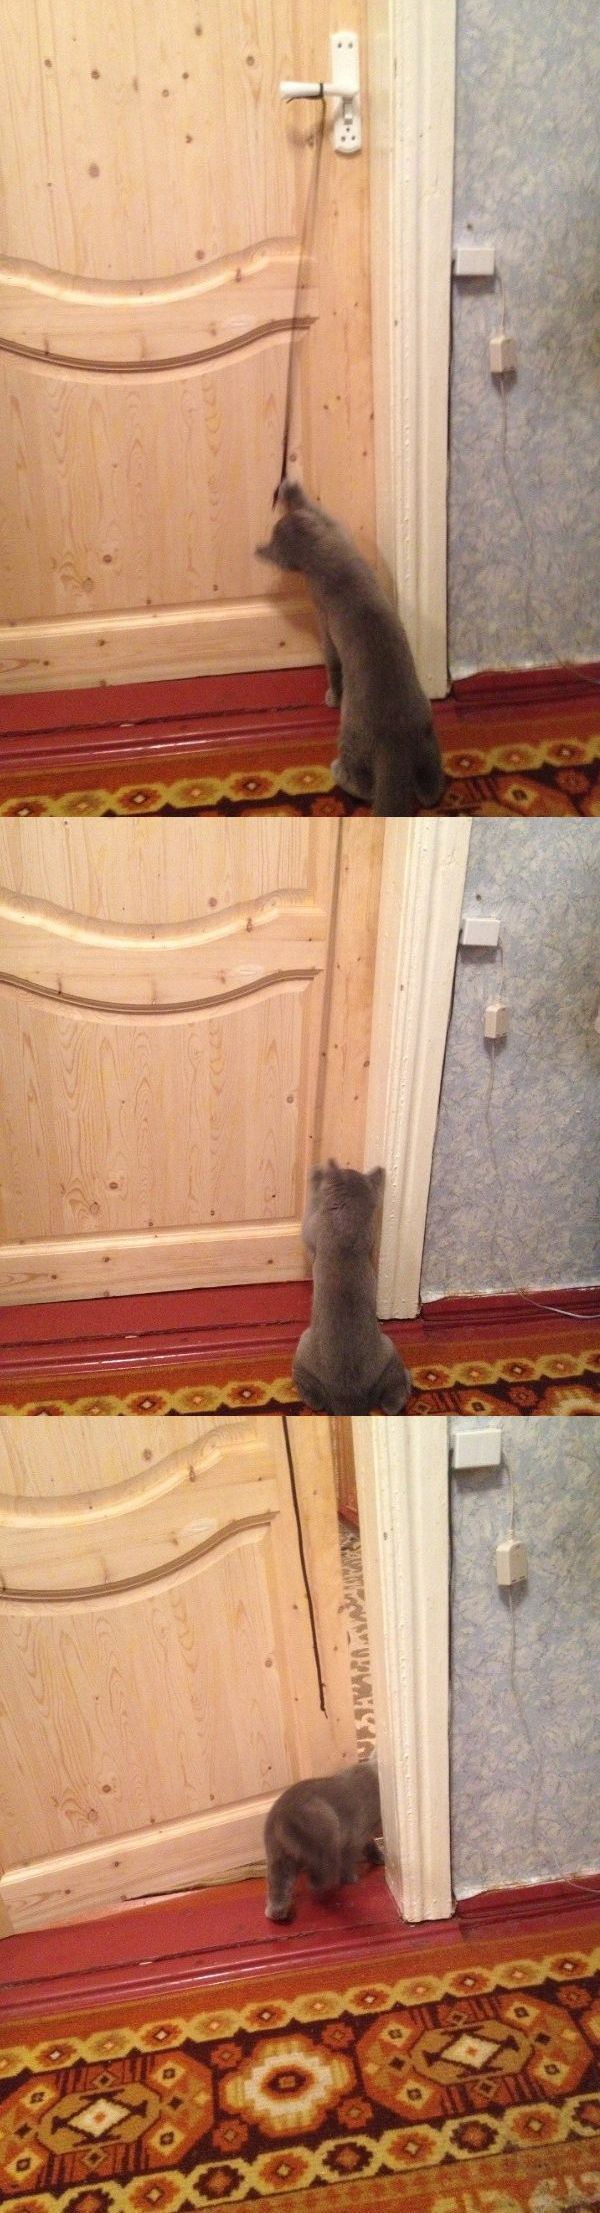 ●【画像】我が家のペットは、こうしてドアを開ける